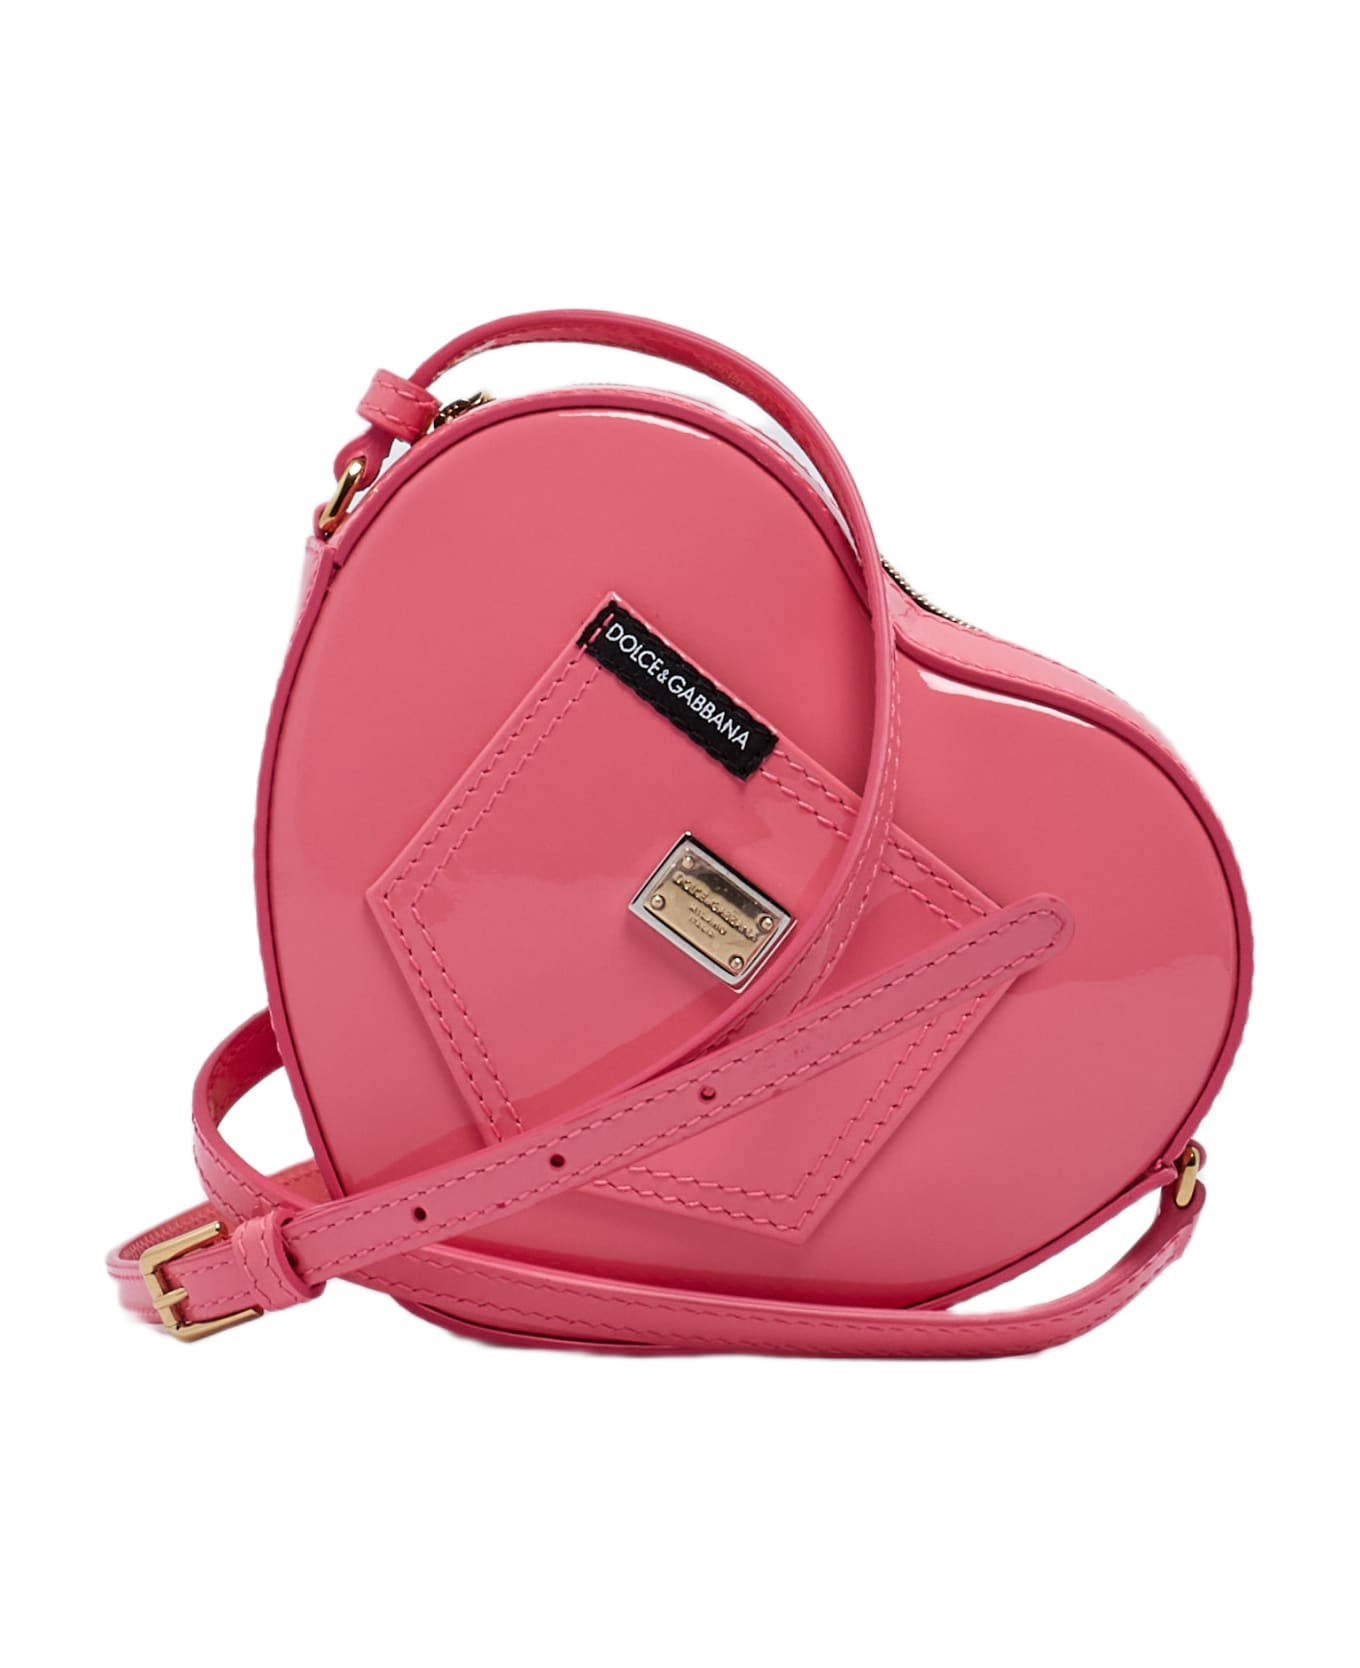 Dolce & Gabbana Heart Shoulder Bag Shoulder Bag - CICLAMINO